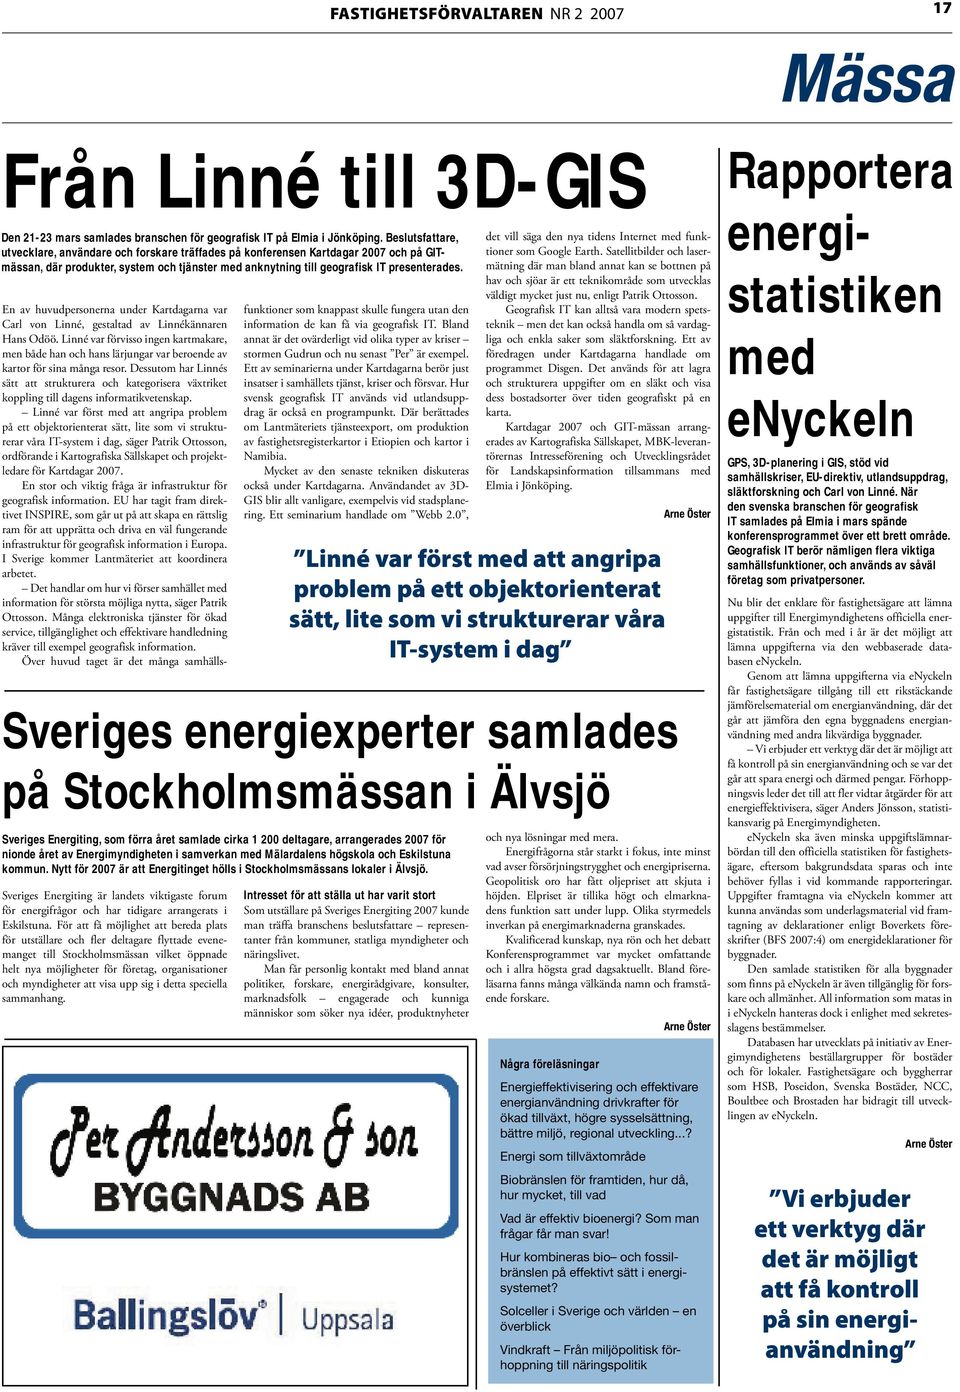 Sveriges Energiting är landets viktigaste forum för energifrågor och har tidigare arrangerats i Eskilstuna.